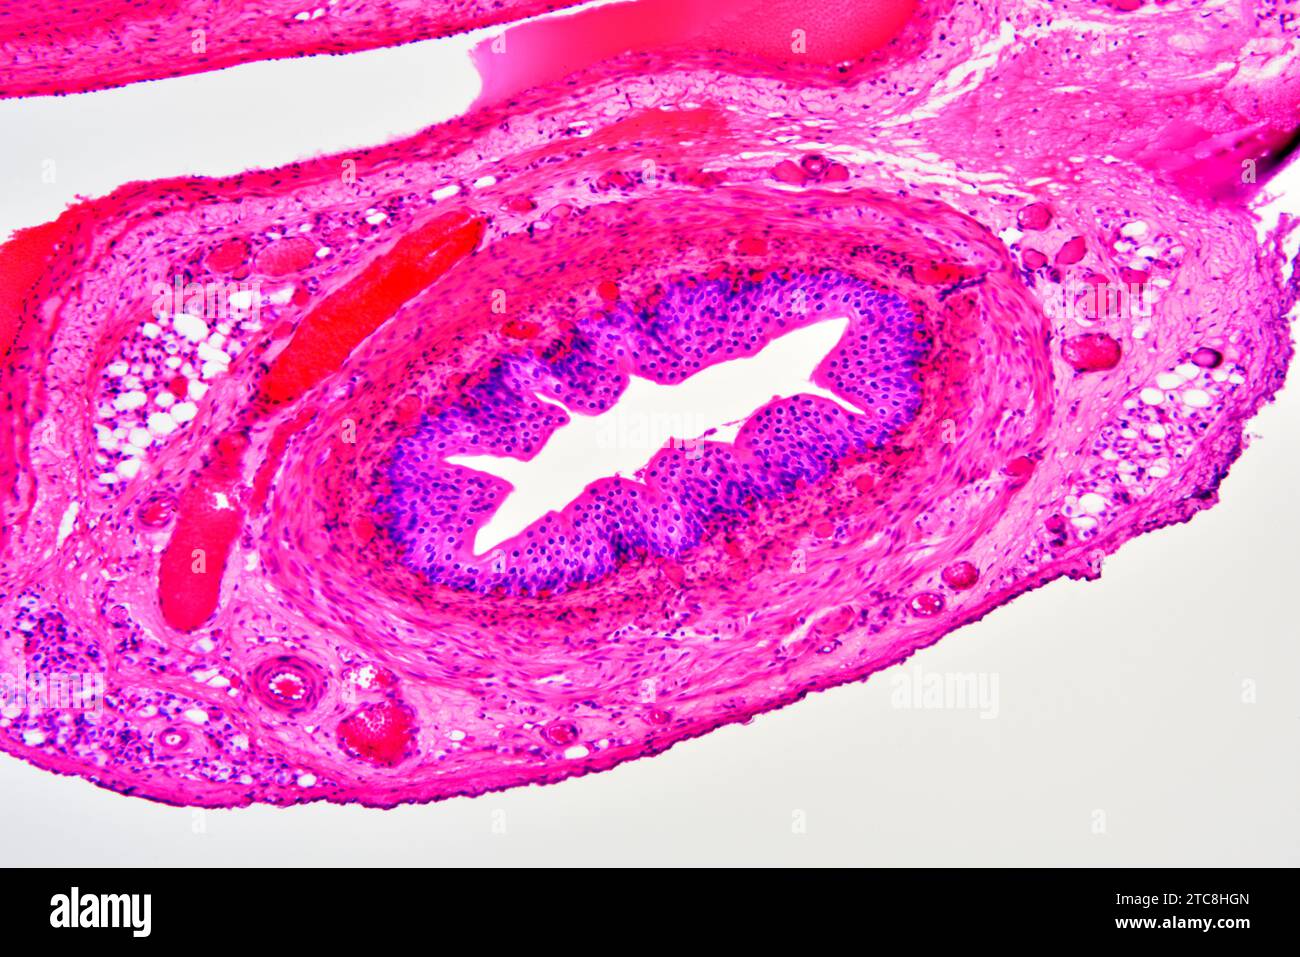 Artère (vaisseau sanguin) montrant une tunica adventice, un média et une intima. Microscope optique X150 à 10 cm de large. Banque D'Images